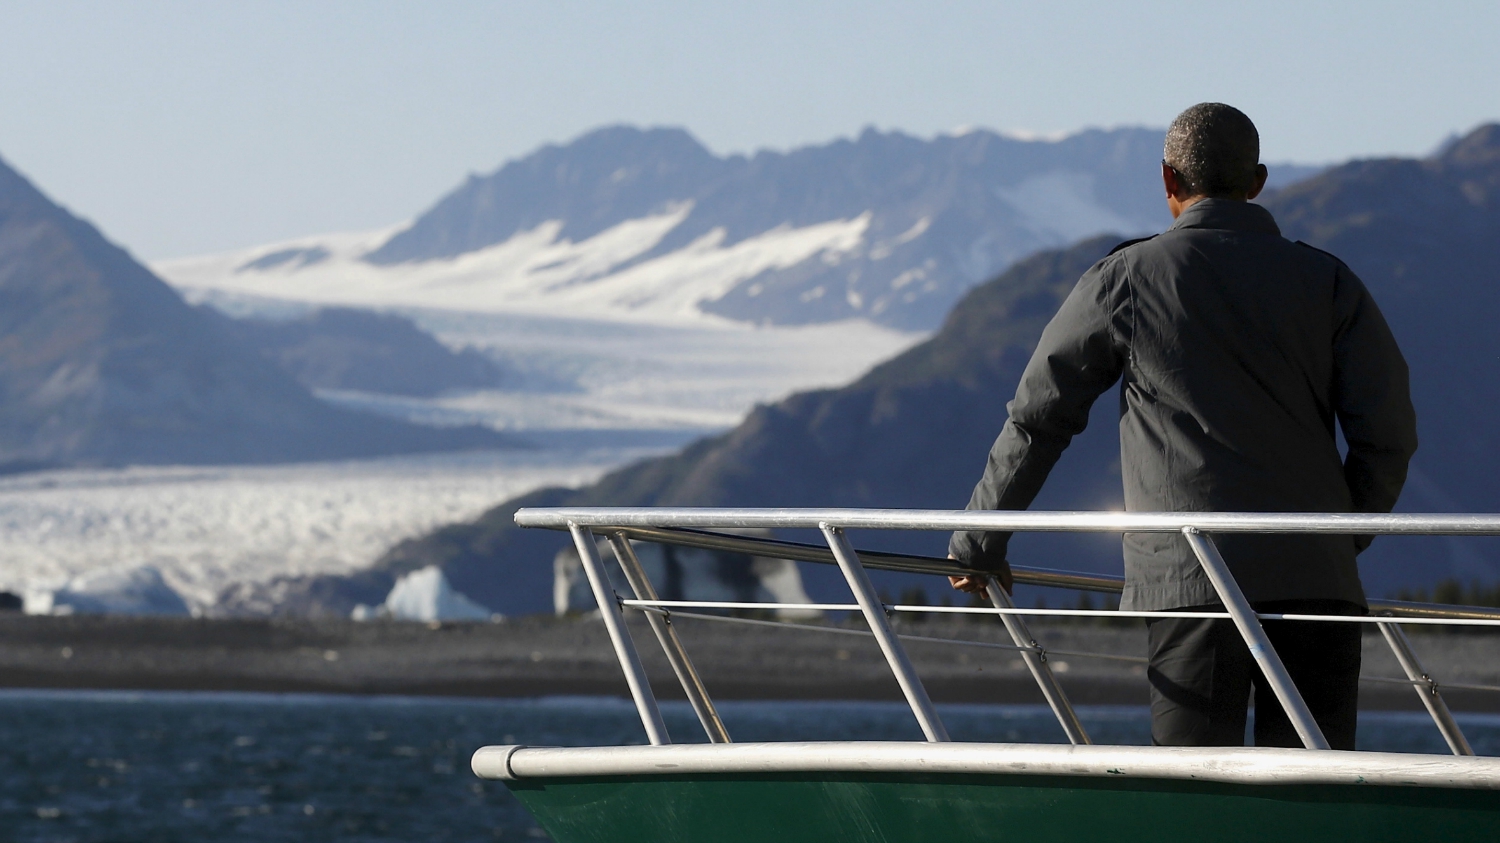 Obama on boat in Alaska